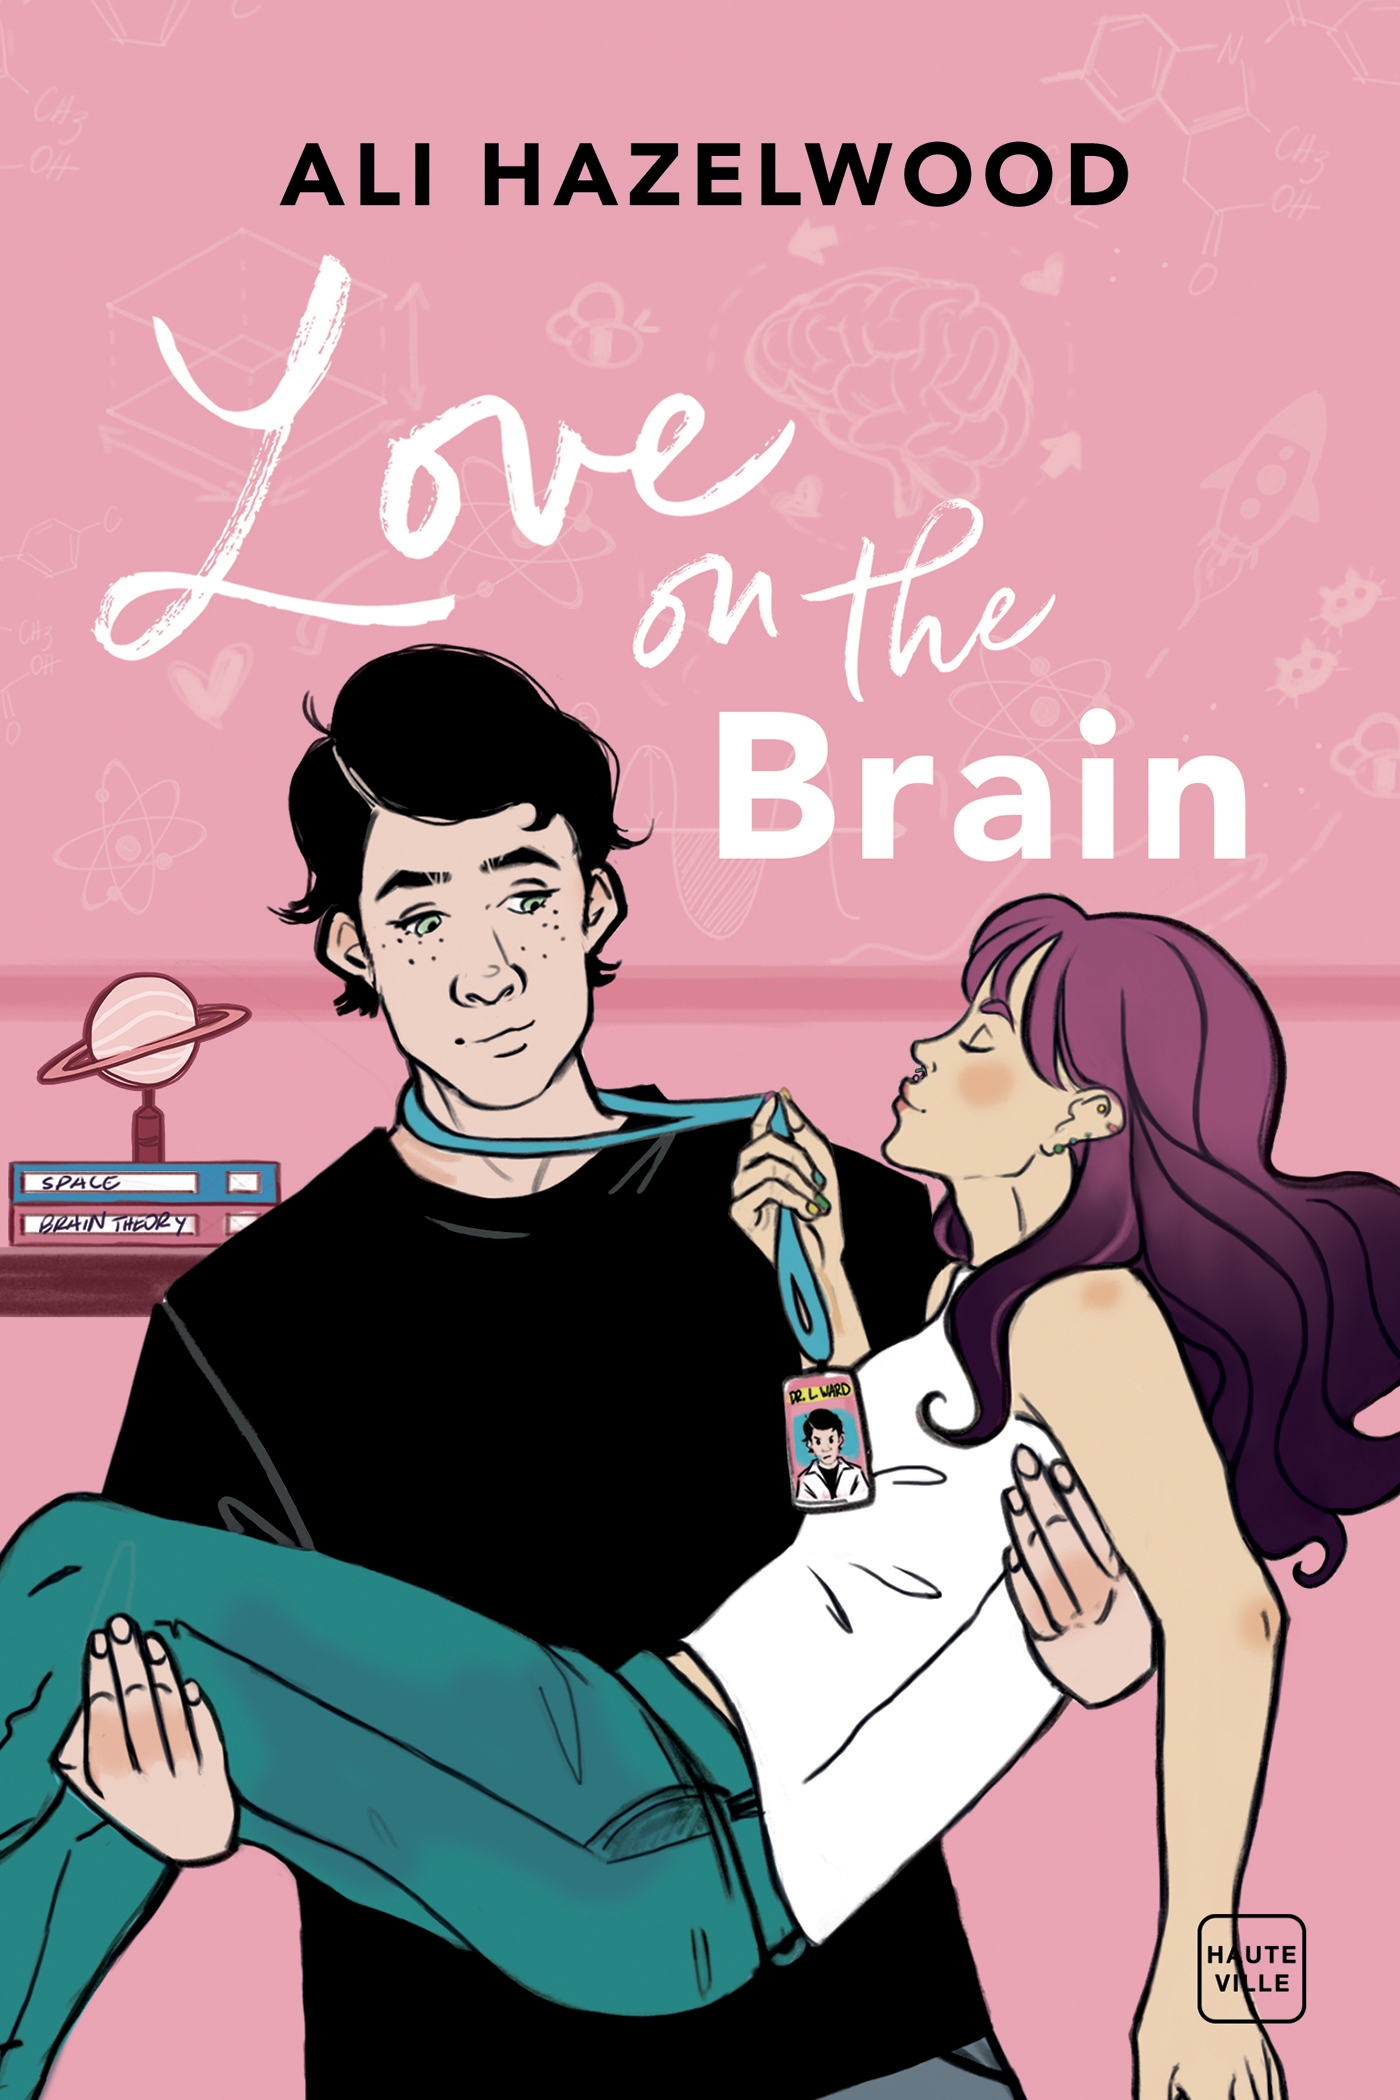 Afficher "Love On The Brain"